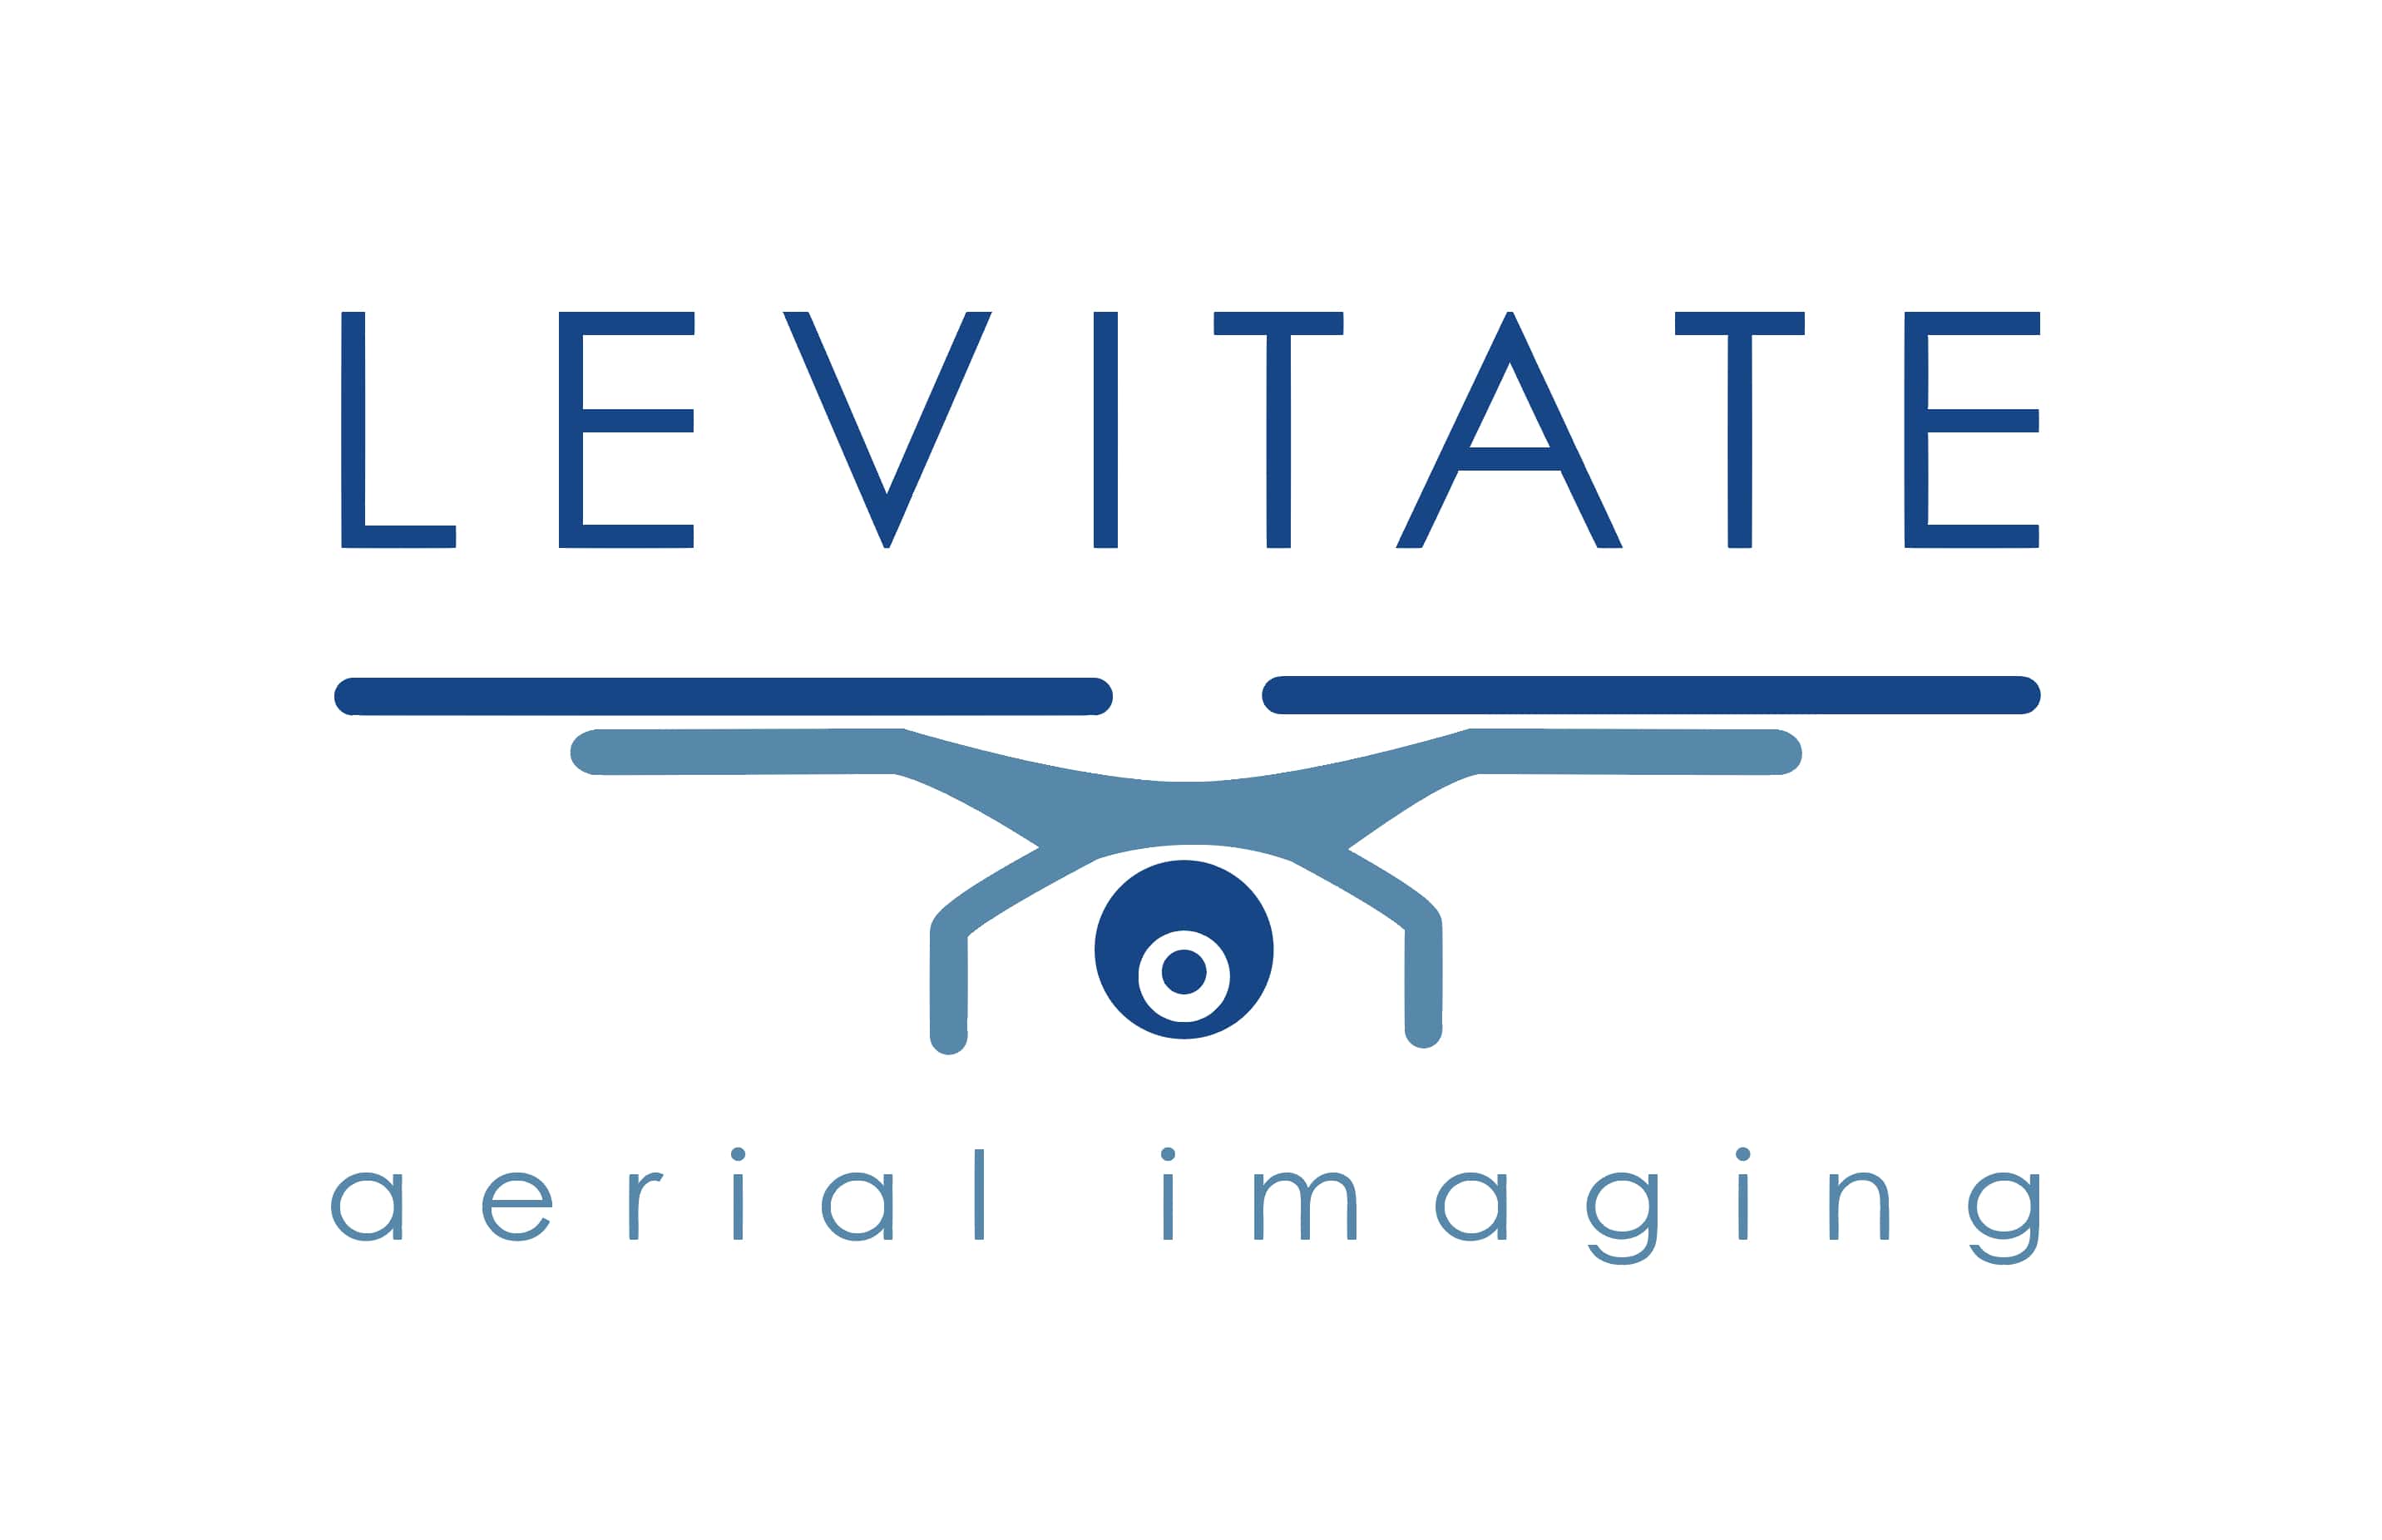 Levitate Aerial Imaging